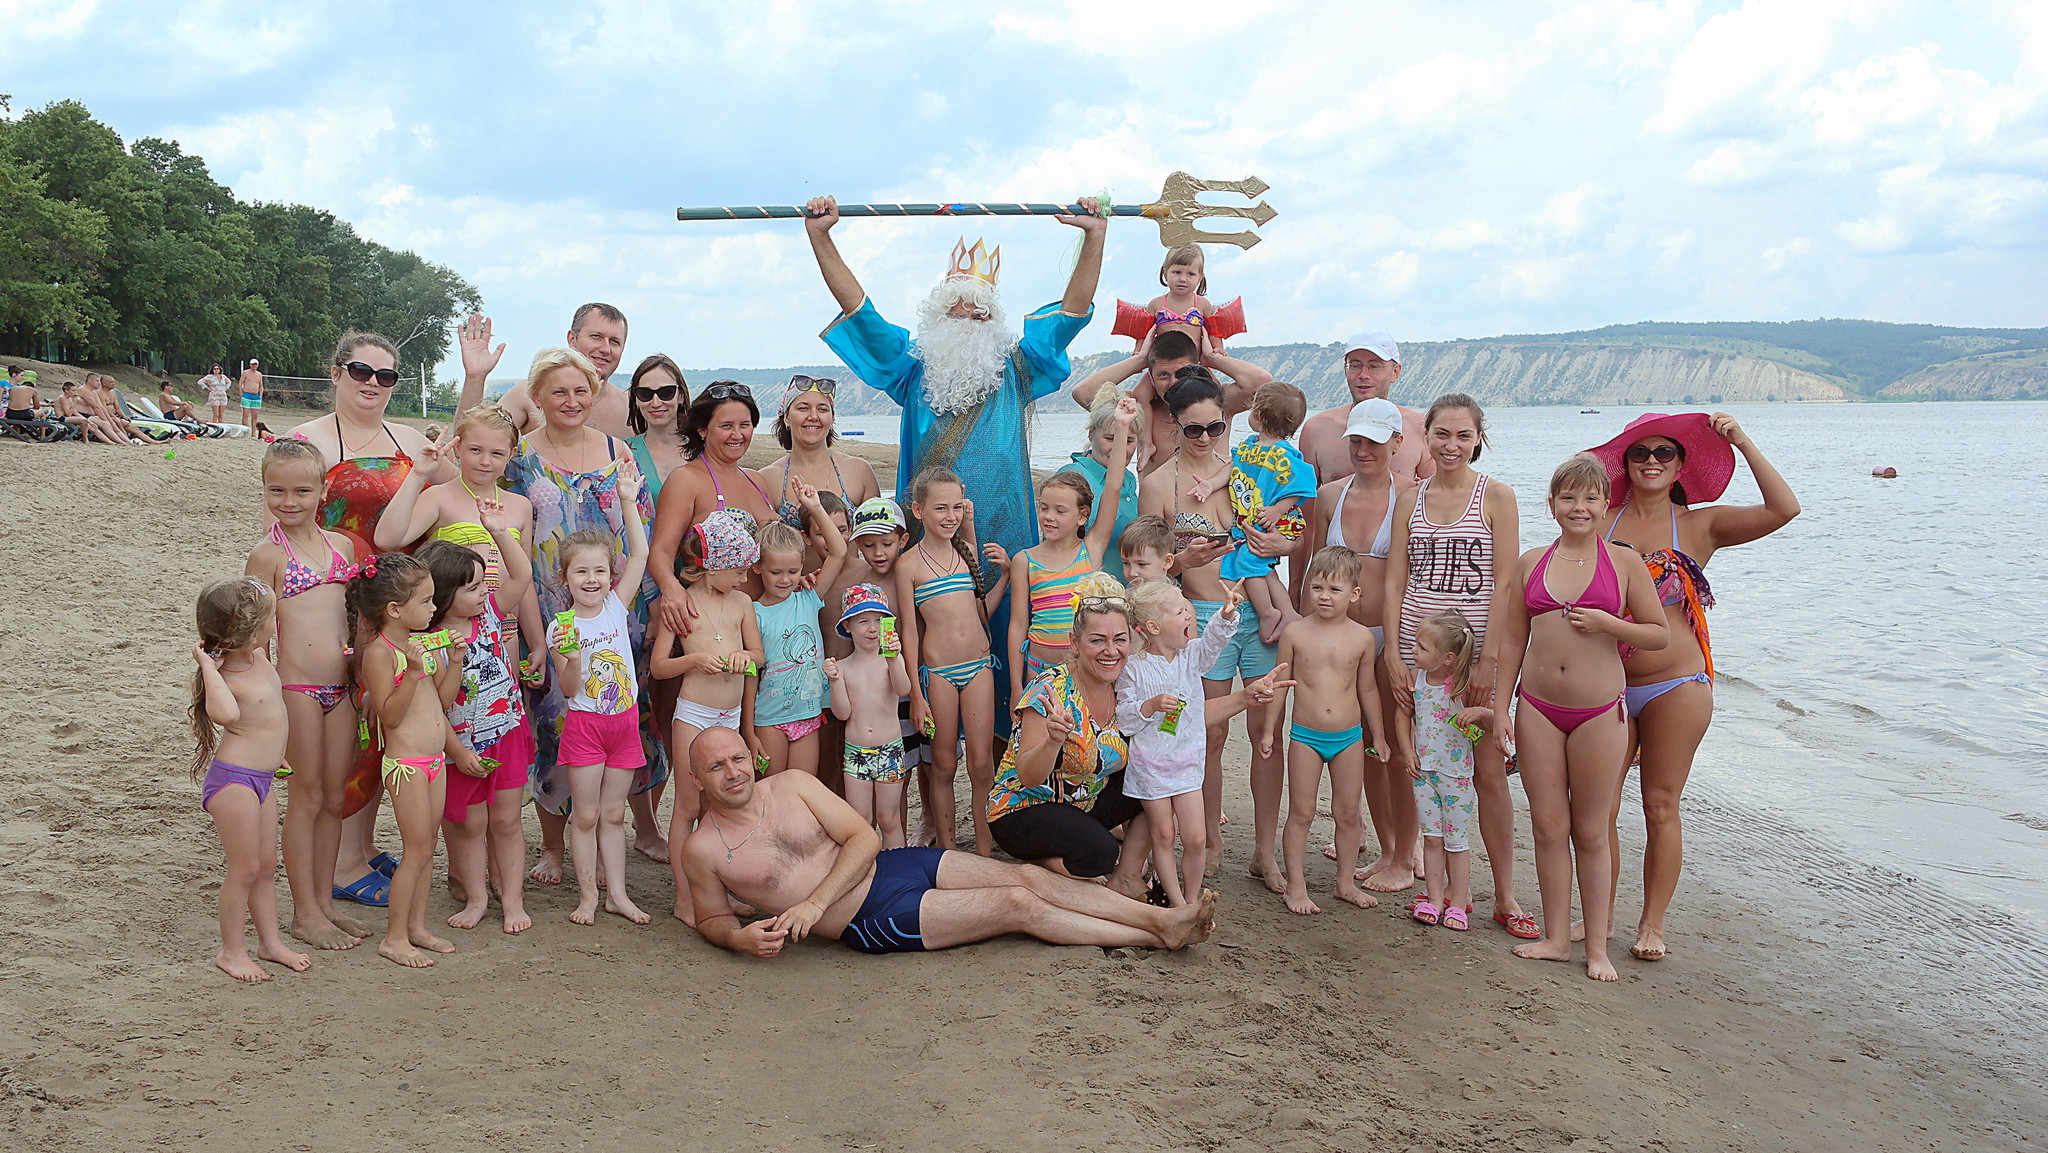 нудиский пляж с голыми детьми фото 108